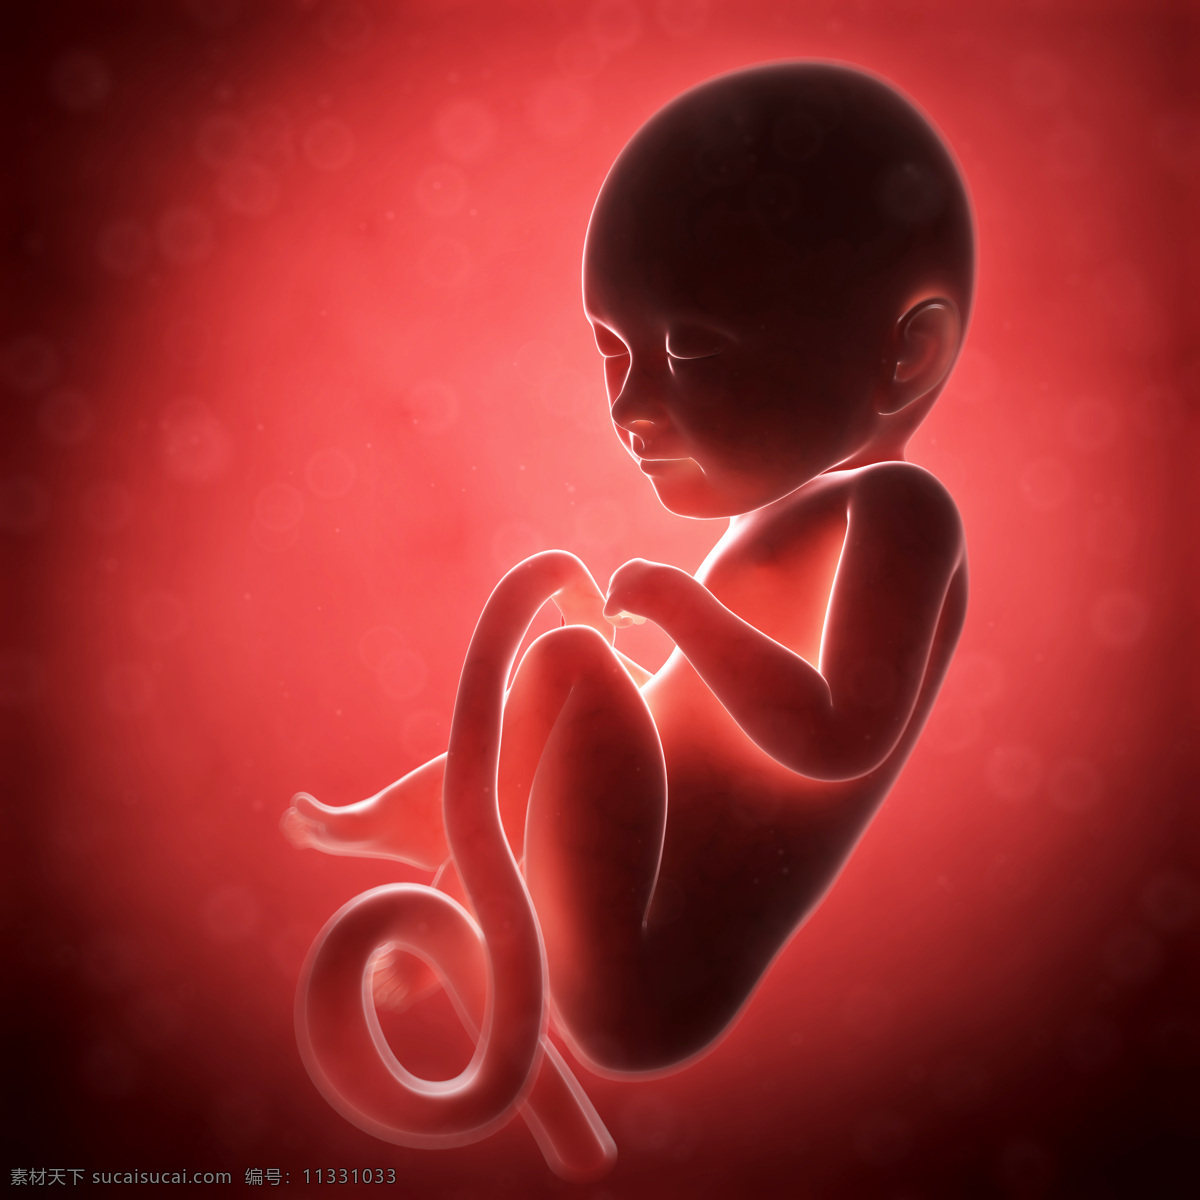 胎儿 发育 过程 素材图片 婴儿 孕育 胚胎发育 儿童图片 人物图片